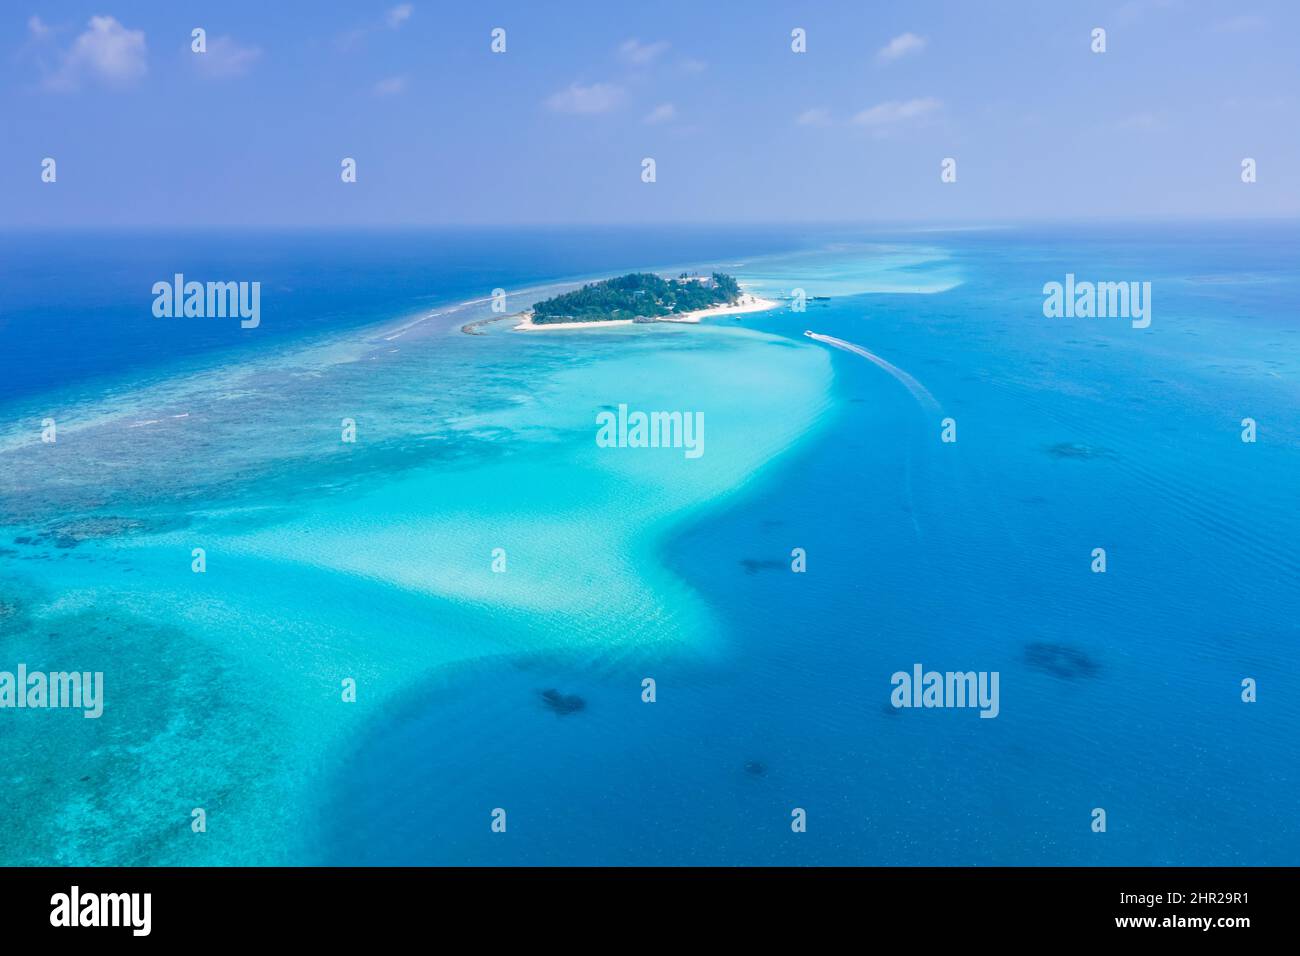 Atoll-Insel mit weißem Sandstrand, türkisfarbenem, transparentem Wasser, Korallenriff, blauem Himmel. Perfektes tropisches Urlaubsziel auf den Malediven. Aer Stockfoto